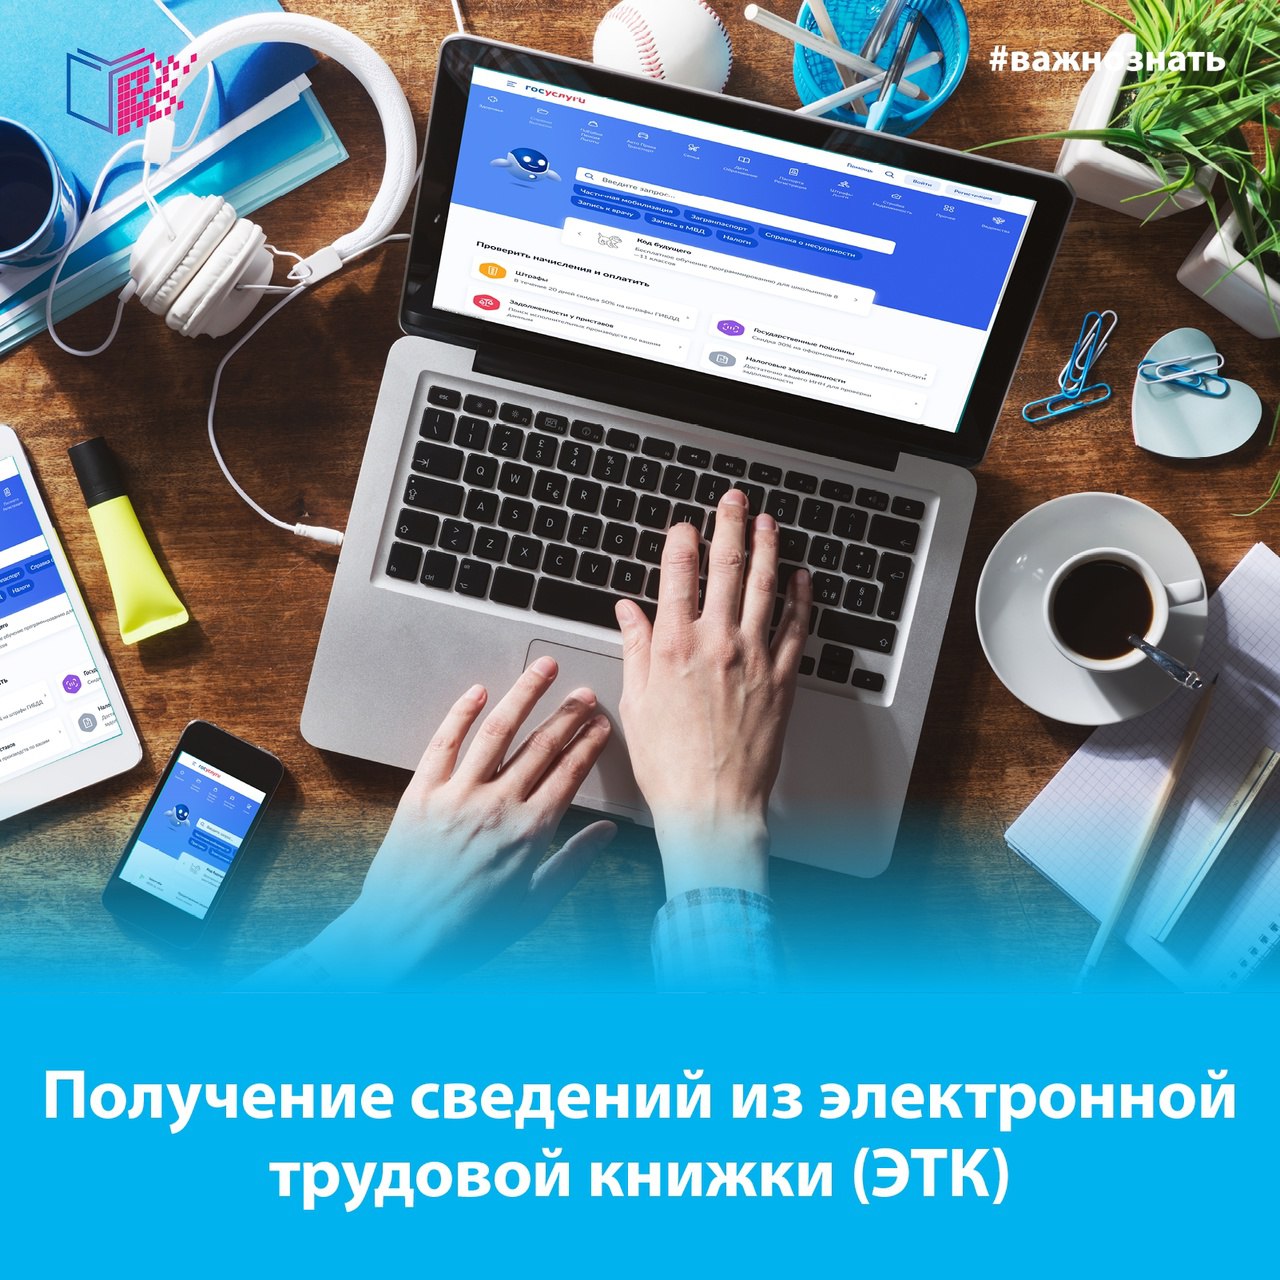 Более 150 тысяч жителей Кузбасса пользуются электронными трудовыми книжками